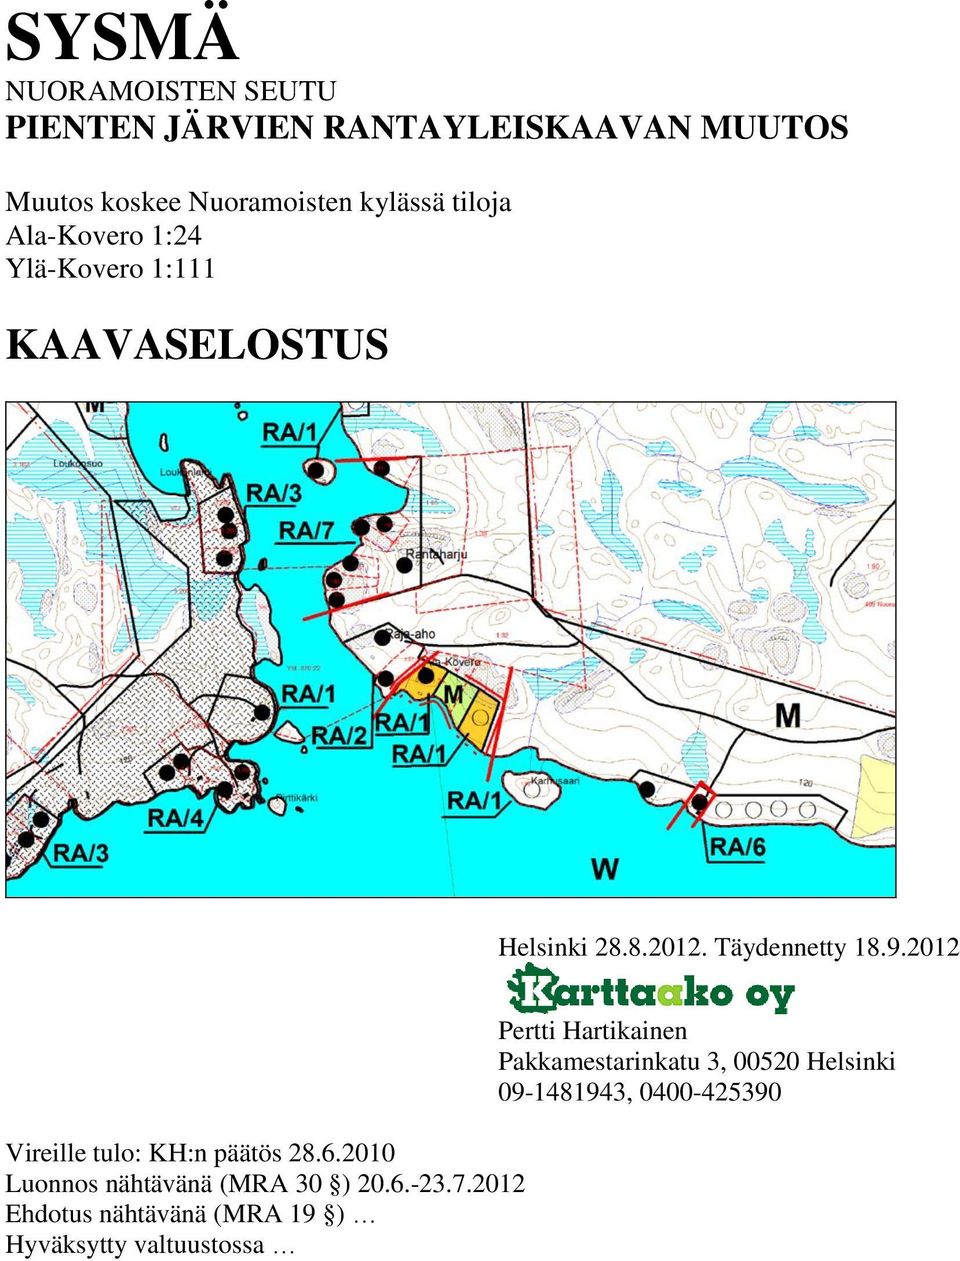 2012 Vireille tulo: KH:n päätös 28.6.2010 Luonnos nähtävänä (MRA 30 ) 20.6.-23.7.